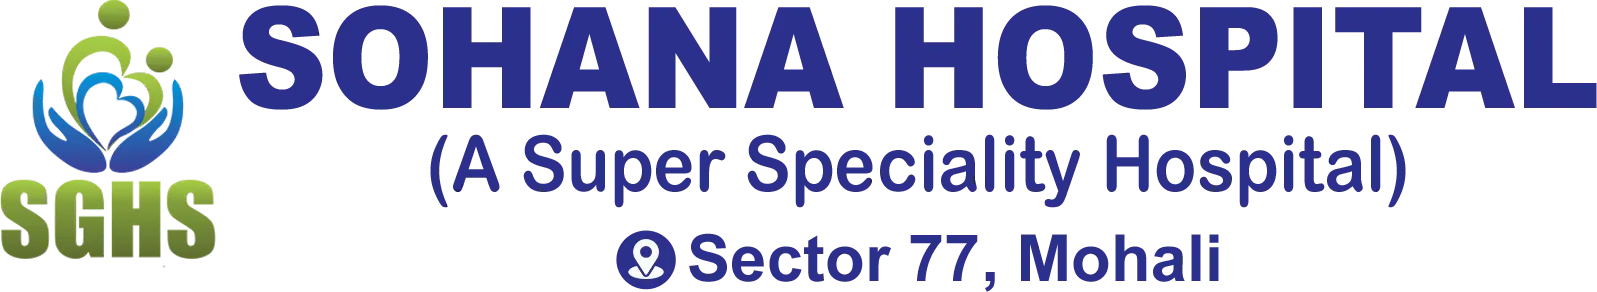 Sohana Hospital Logo